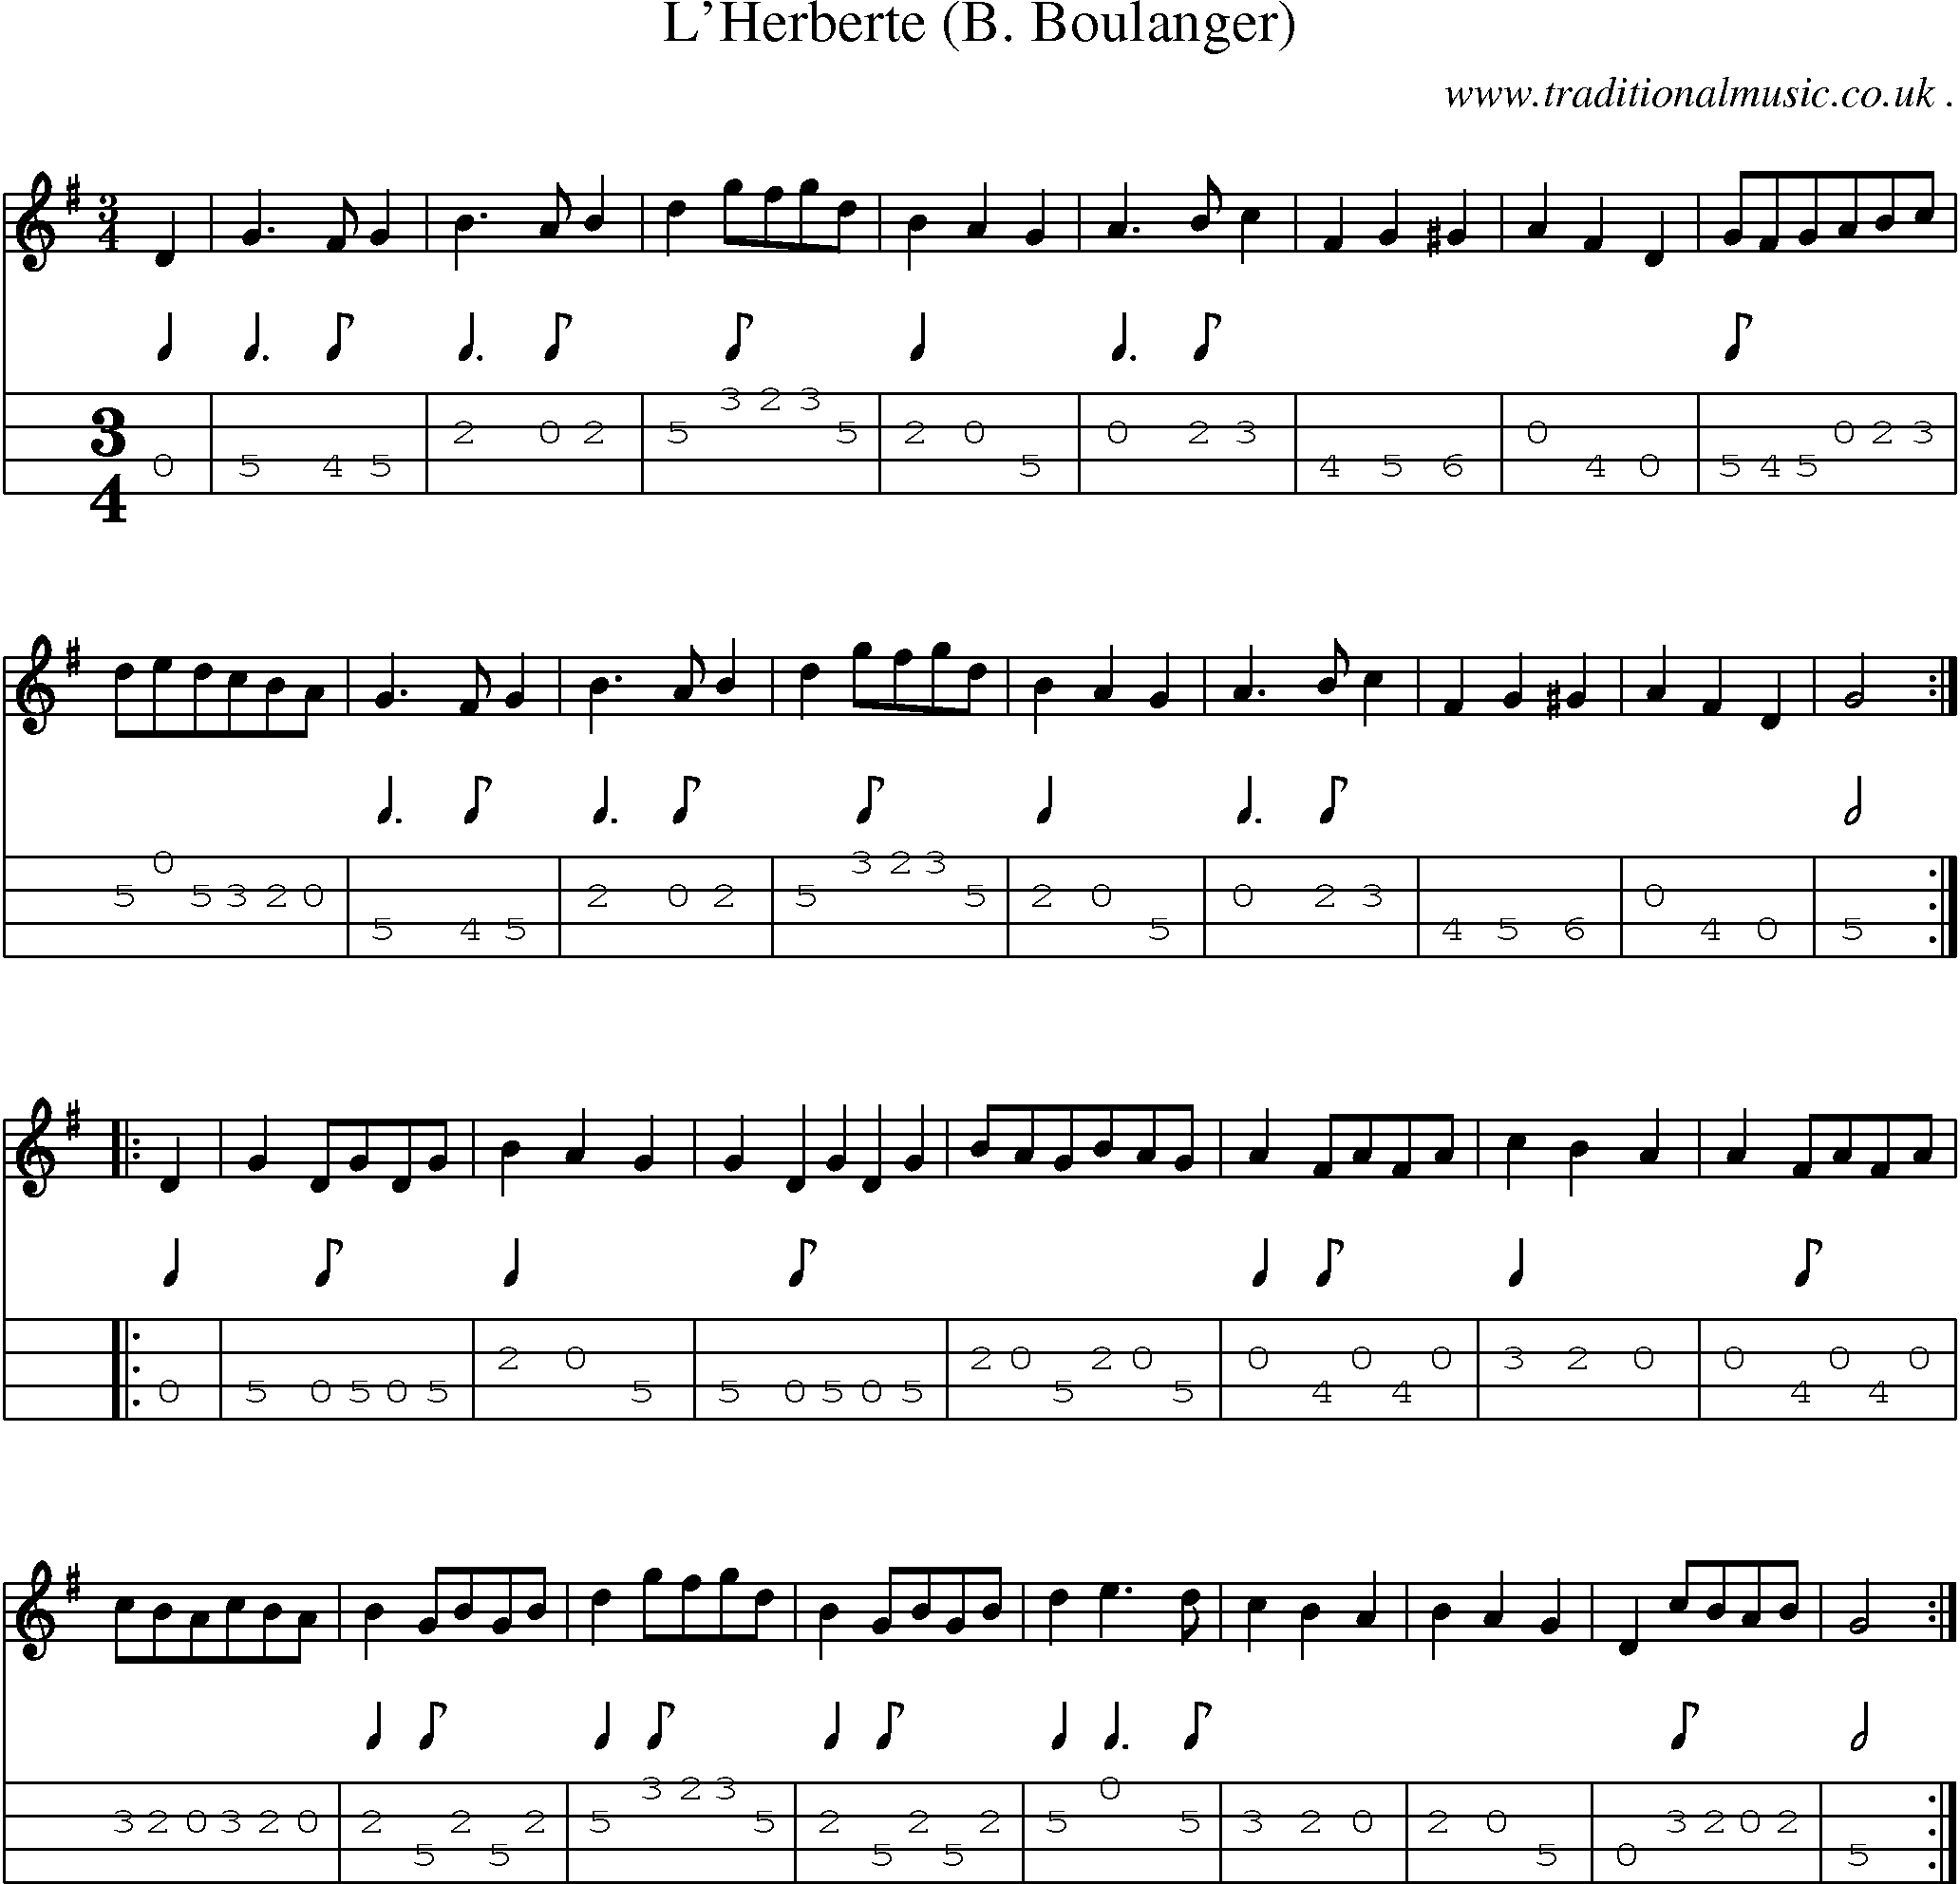 Sheet-Music and Mandolin Tabs for Lherberte (b Boulanger)